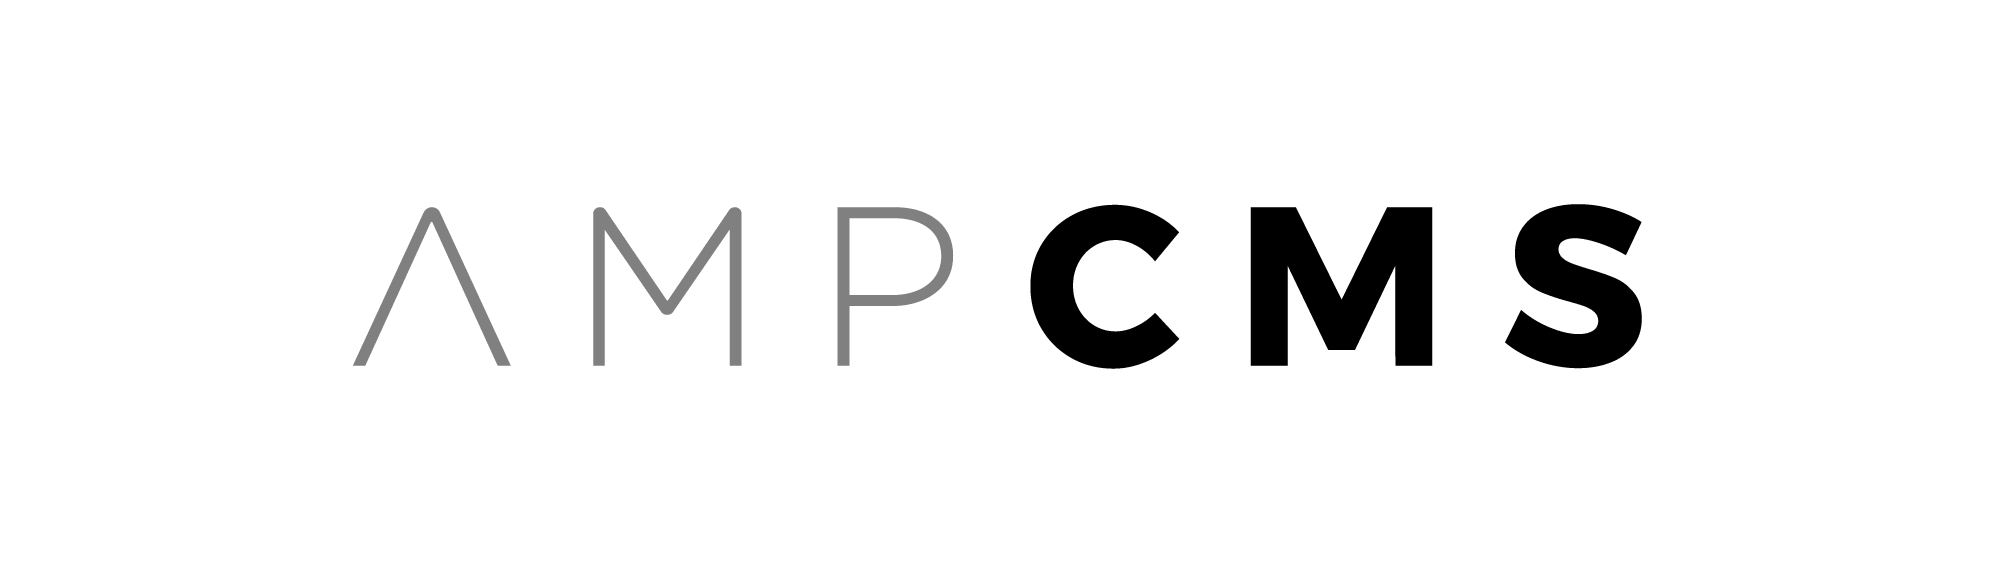 AMP CMS Logo